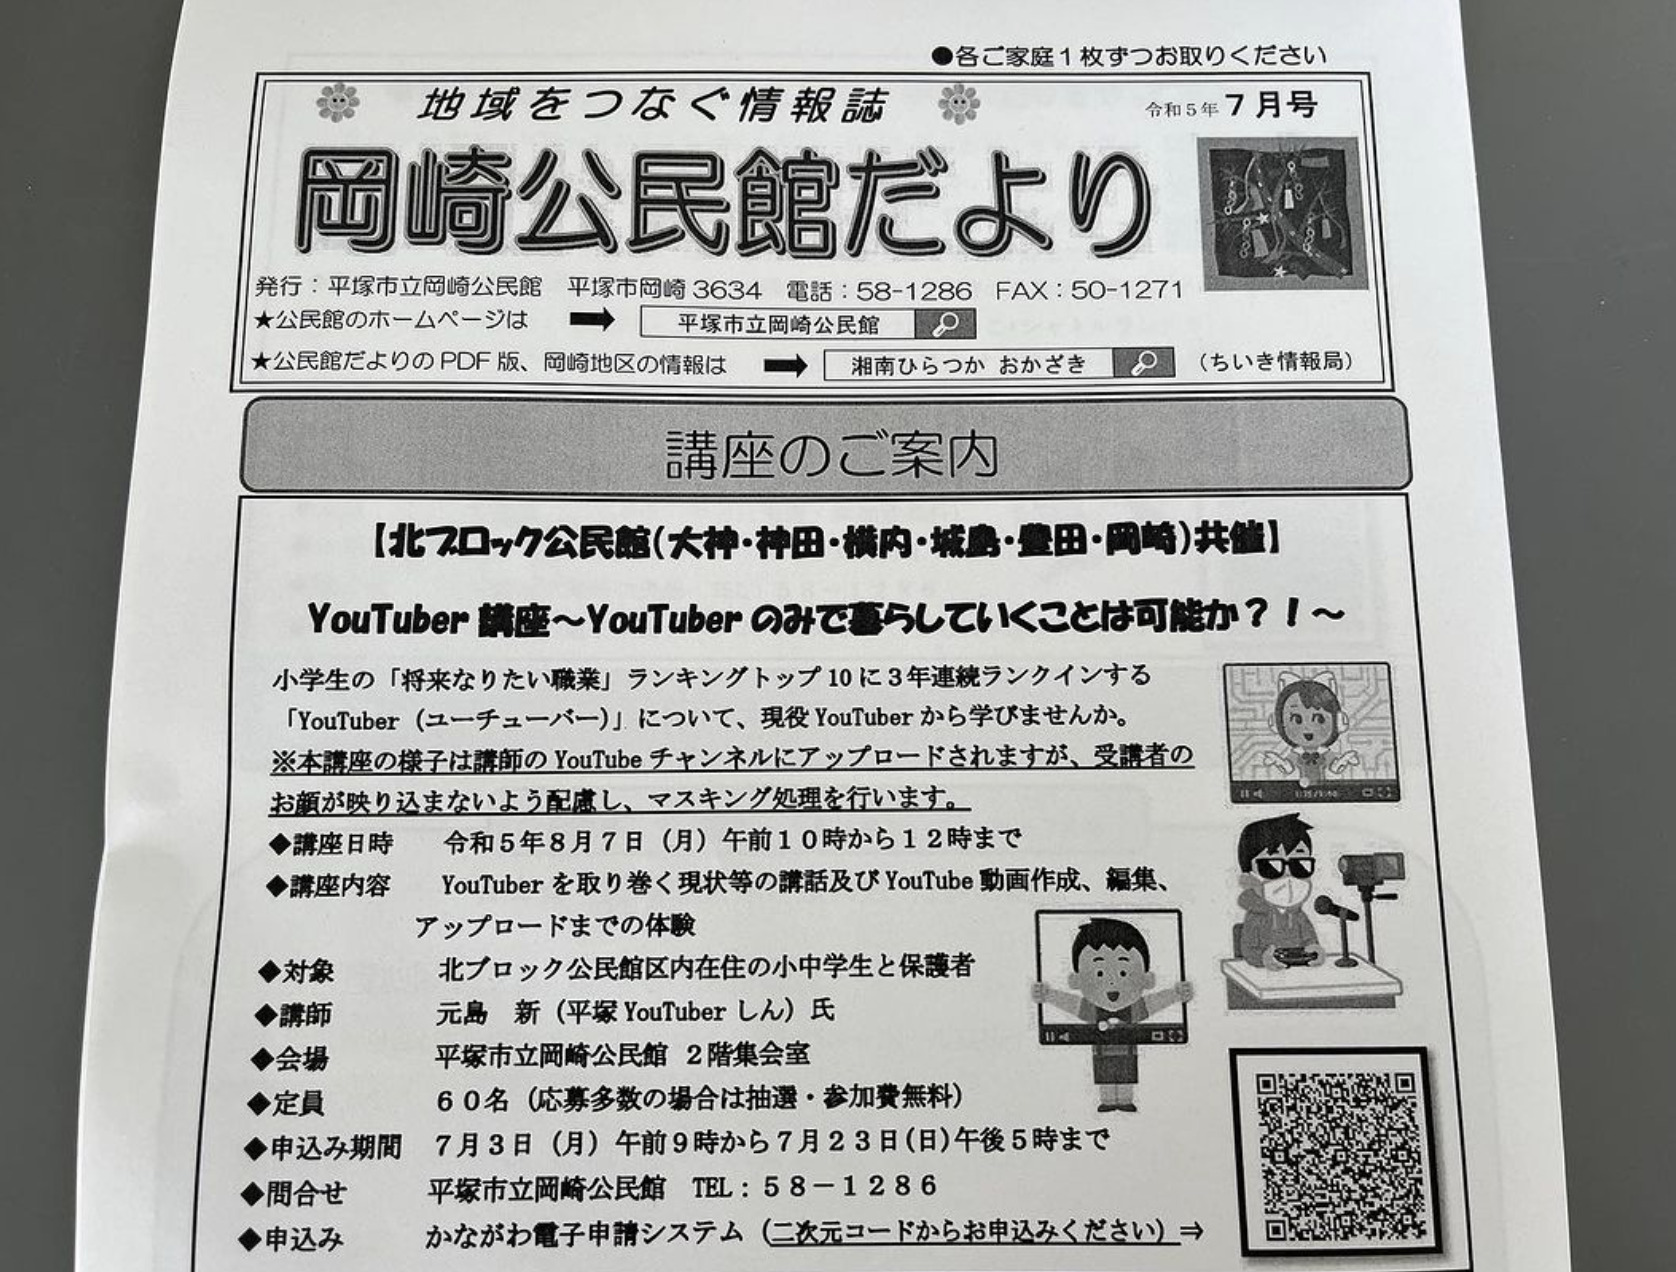 岡崎公民館にてYouTuber講座を行います。